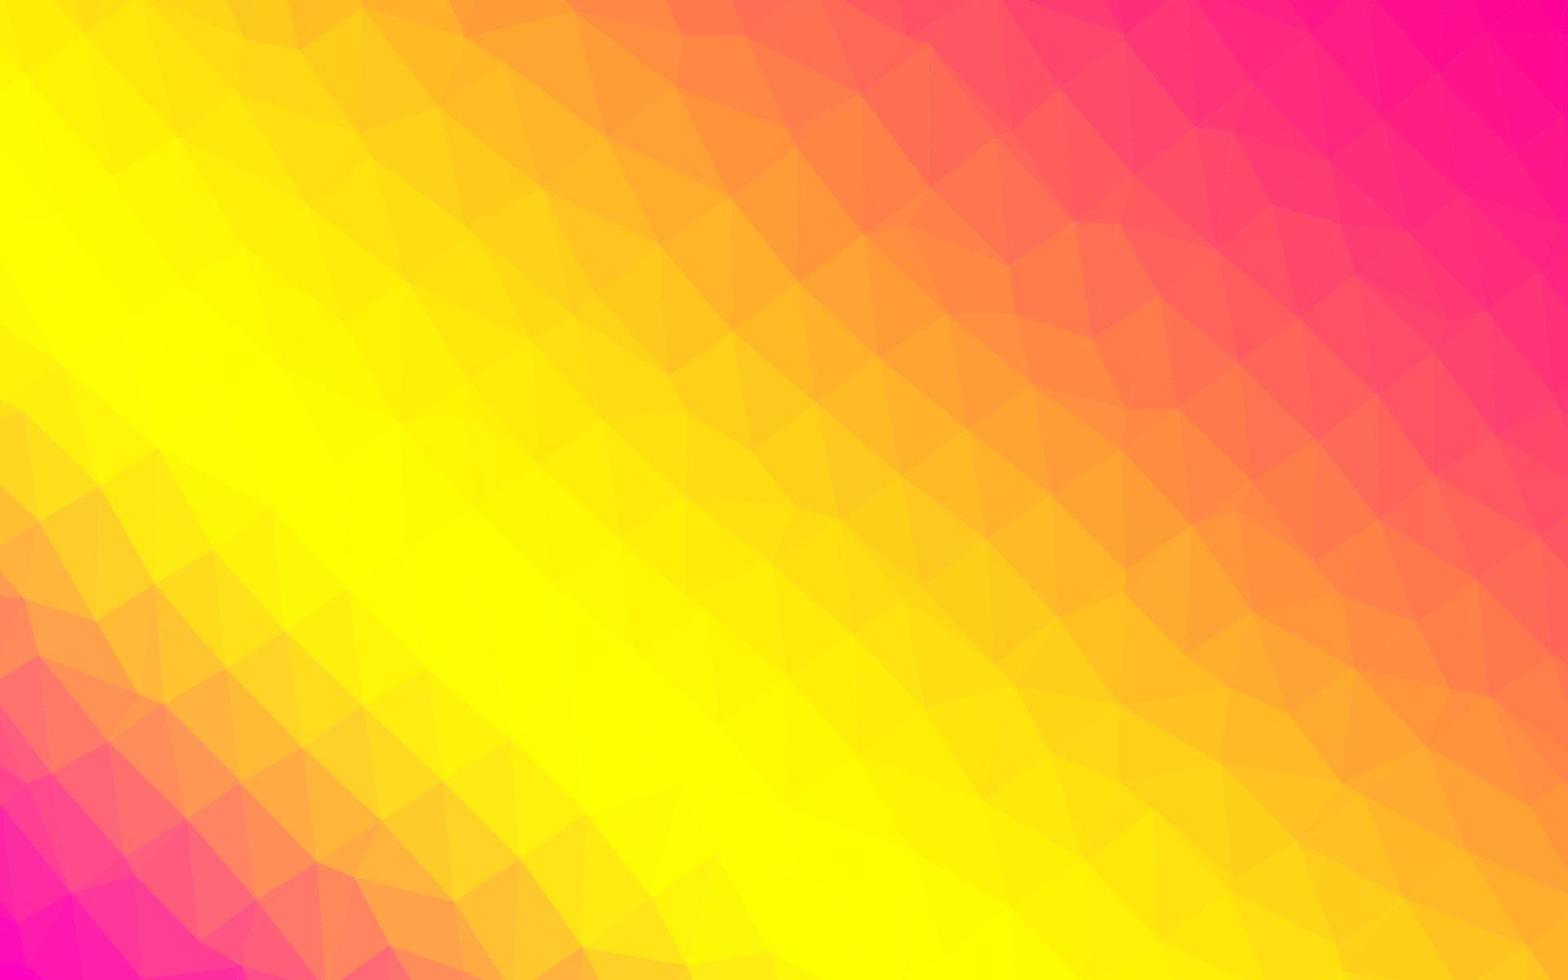 copertina a mosaico a triangolo vettoriale rosa chiaro, giallo.